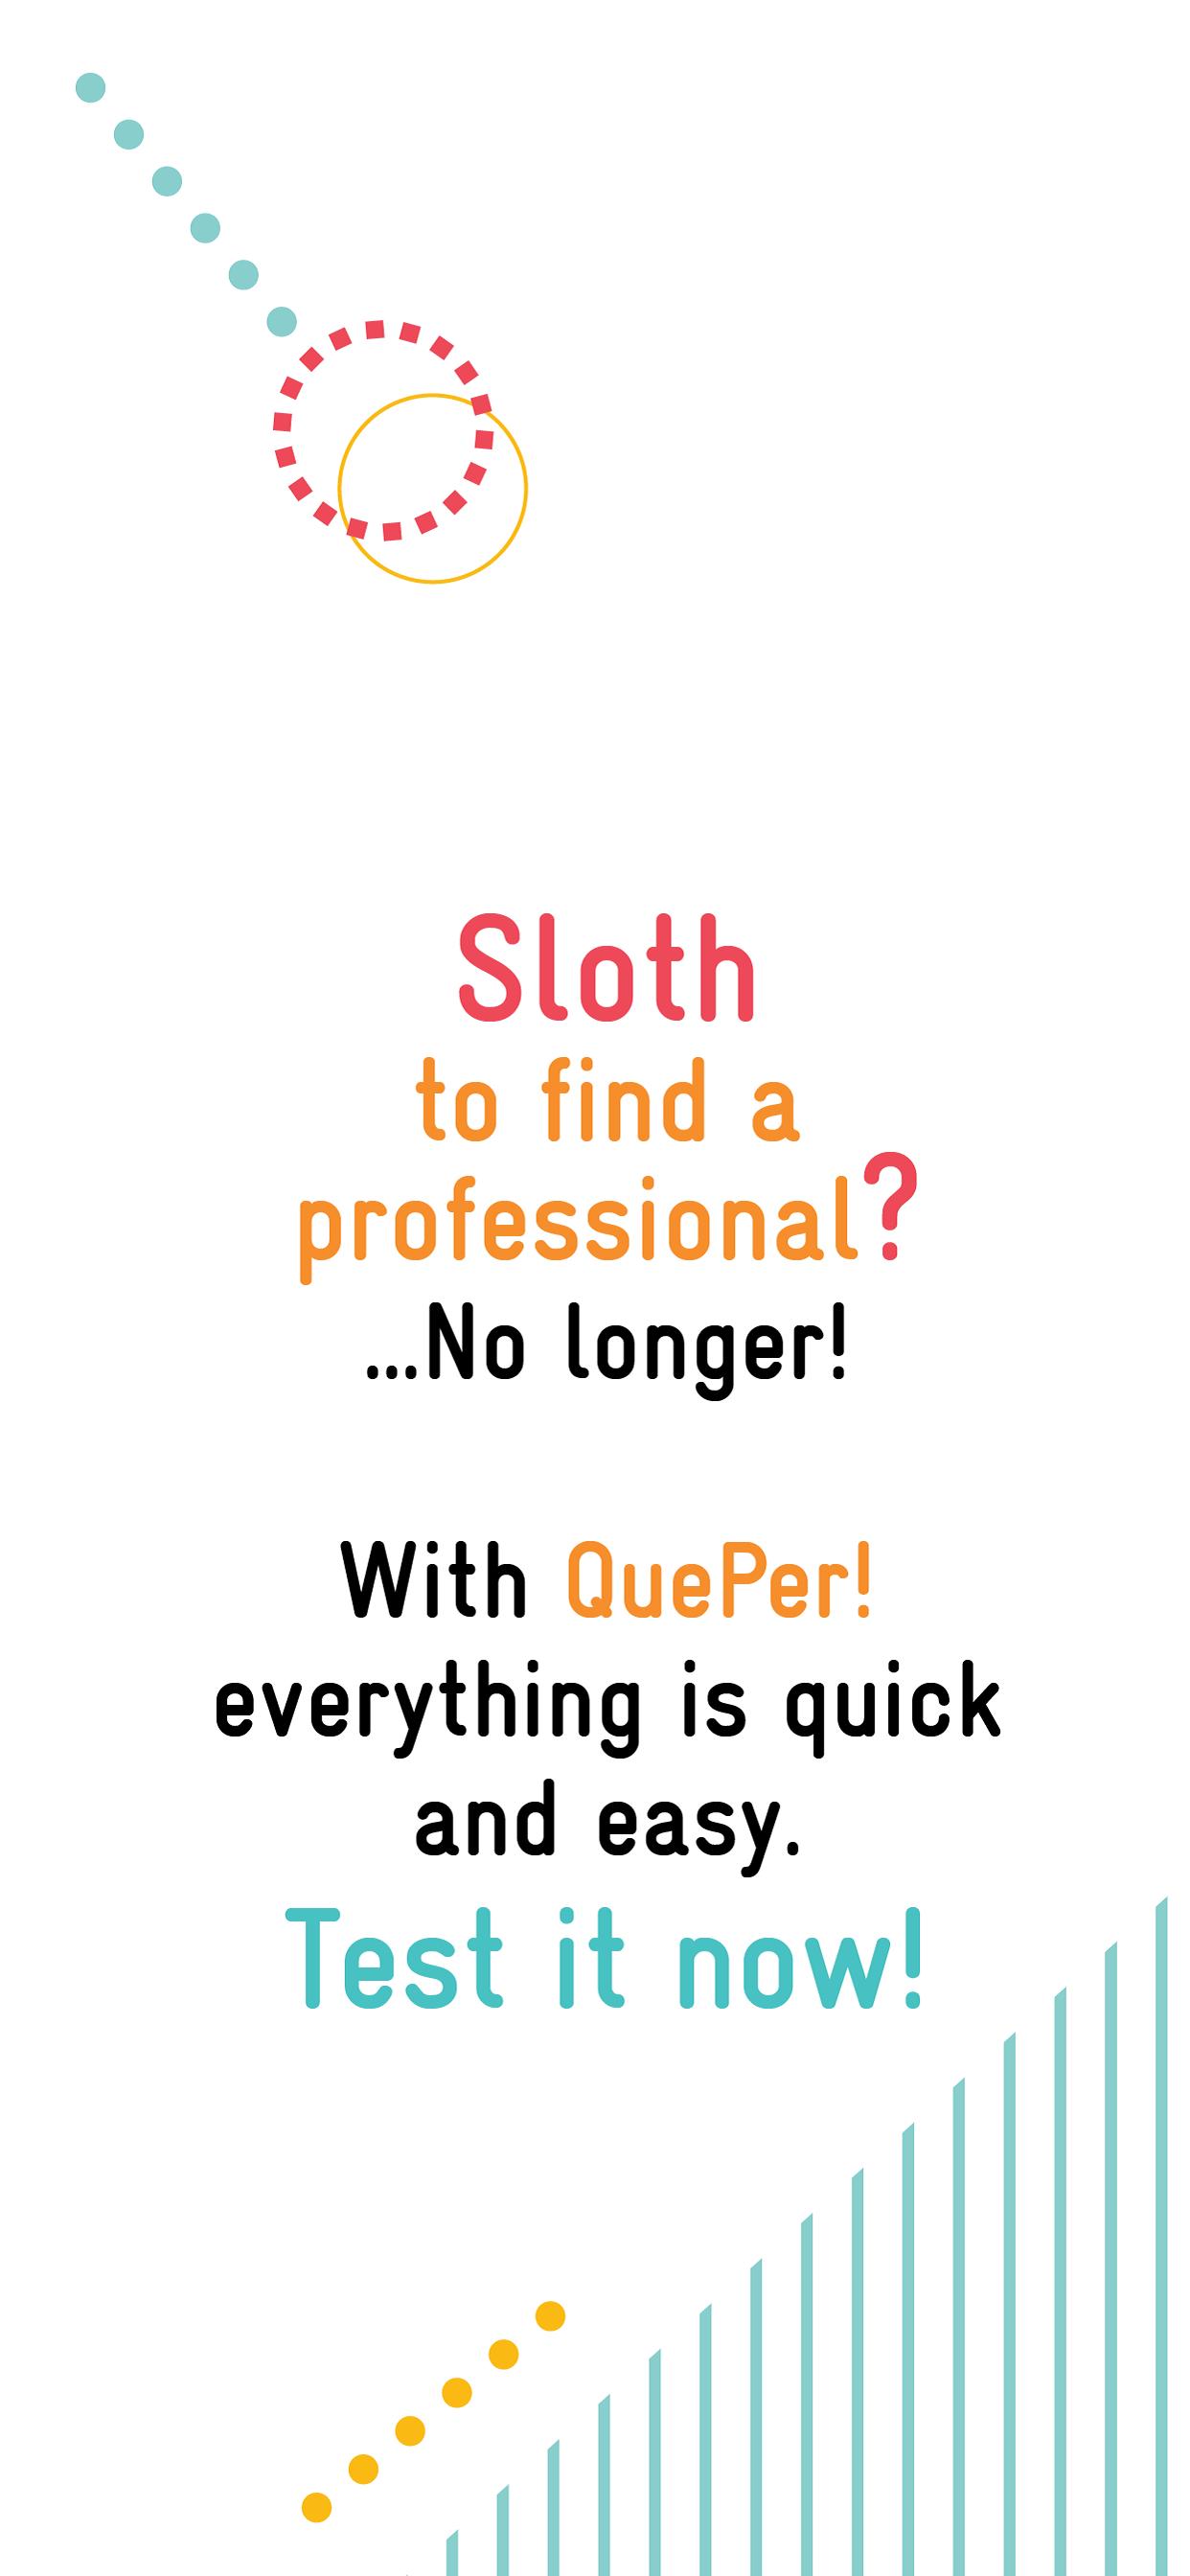 QuePer! The professional you need near you 1.0.43 Screenshot 1